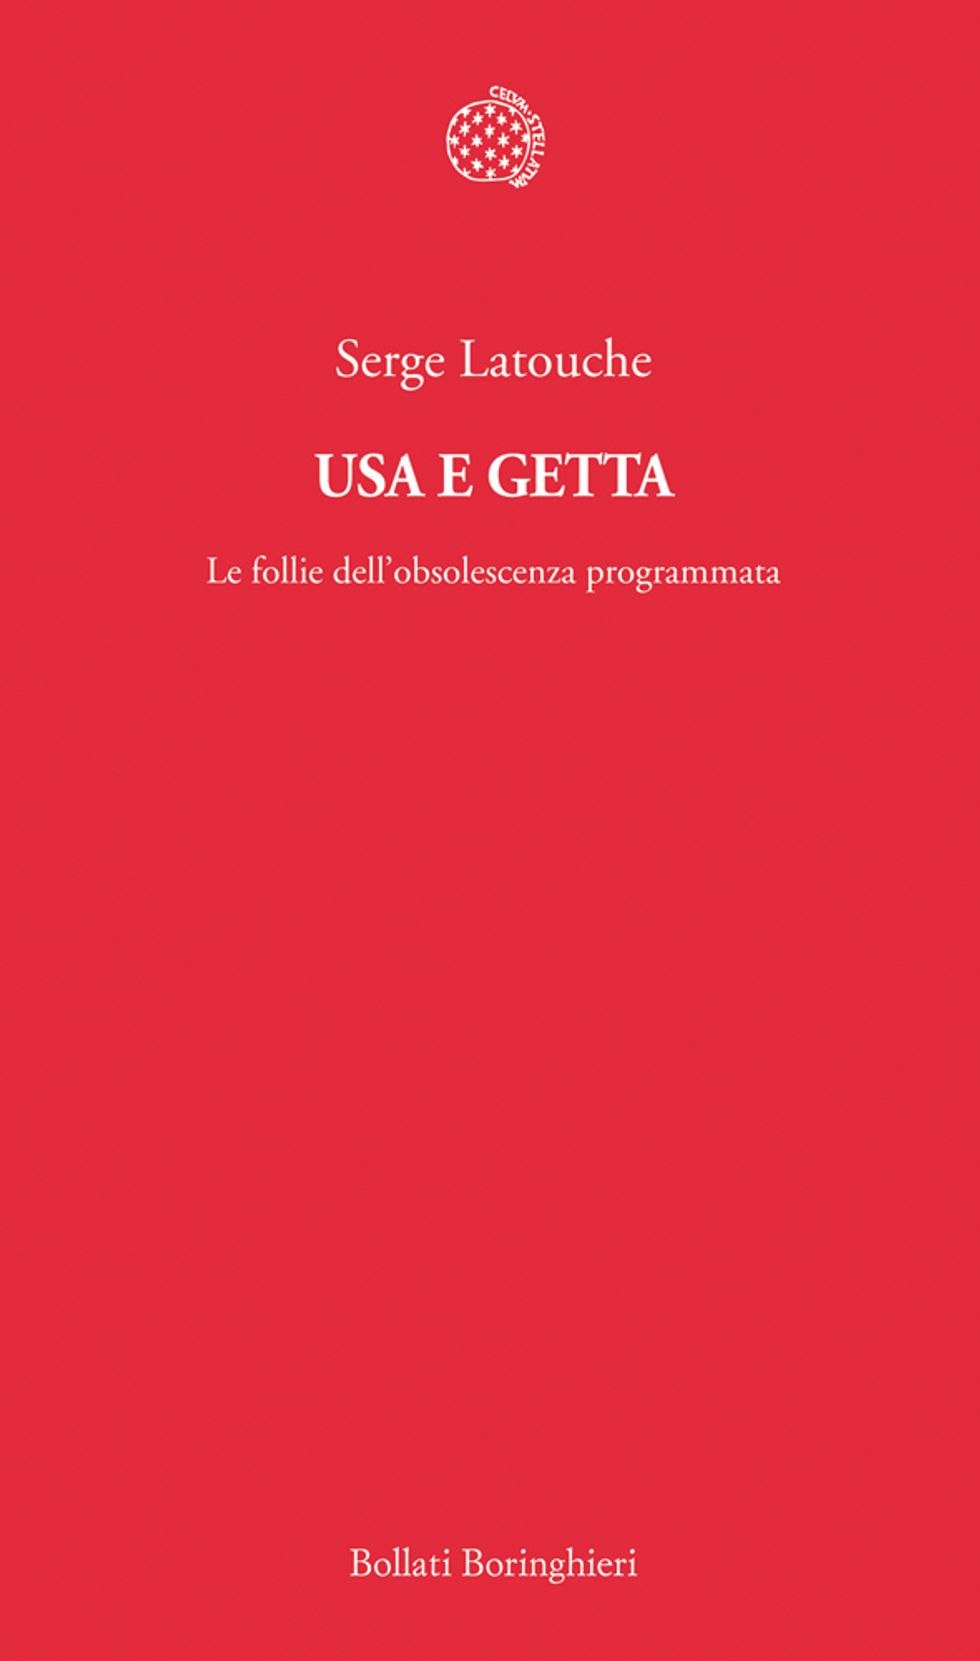 Serge Latouche, "Usa e getta": anatomia delle cose guaste